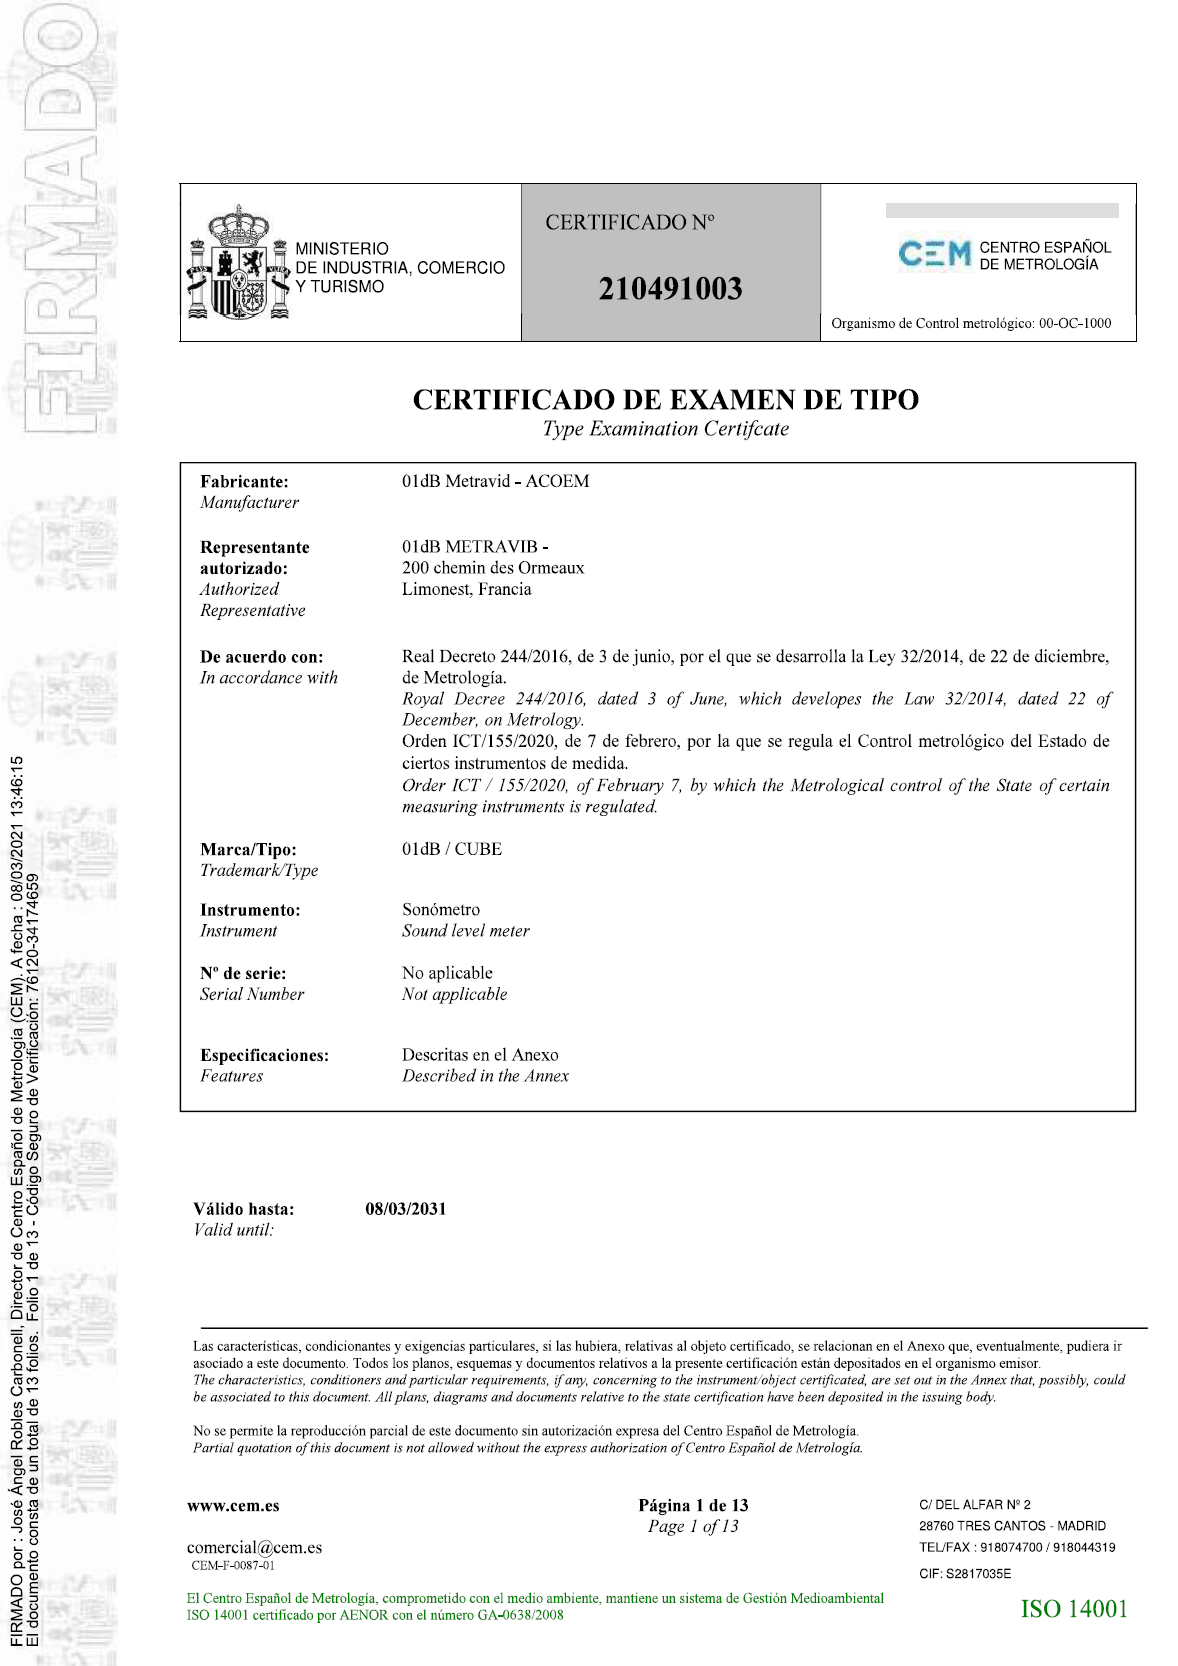 Certificado de examen de tipo nº 210491003